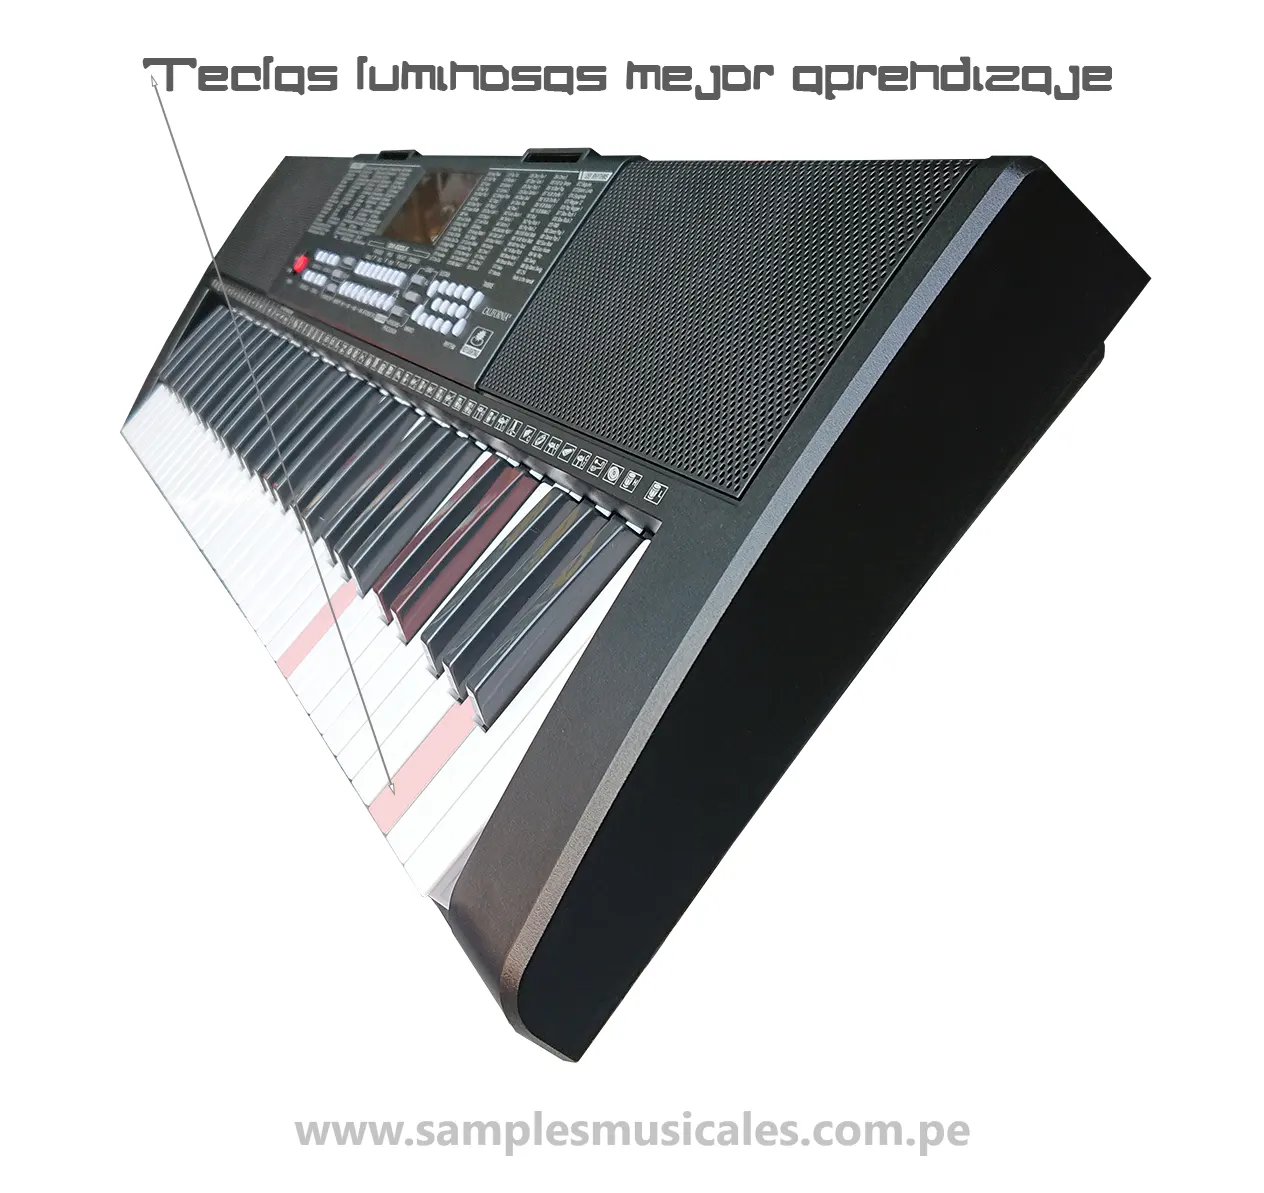 Soporte P/ Organo / Teclado / Piano + Adaptador P/ Notebook